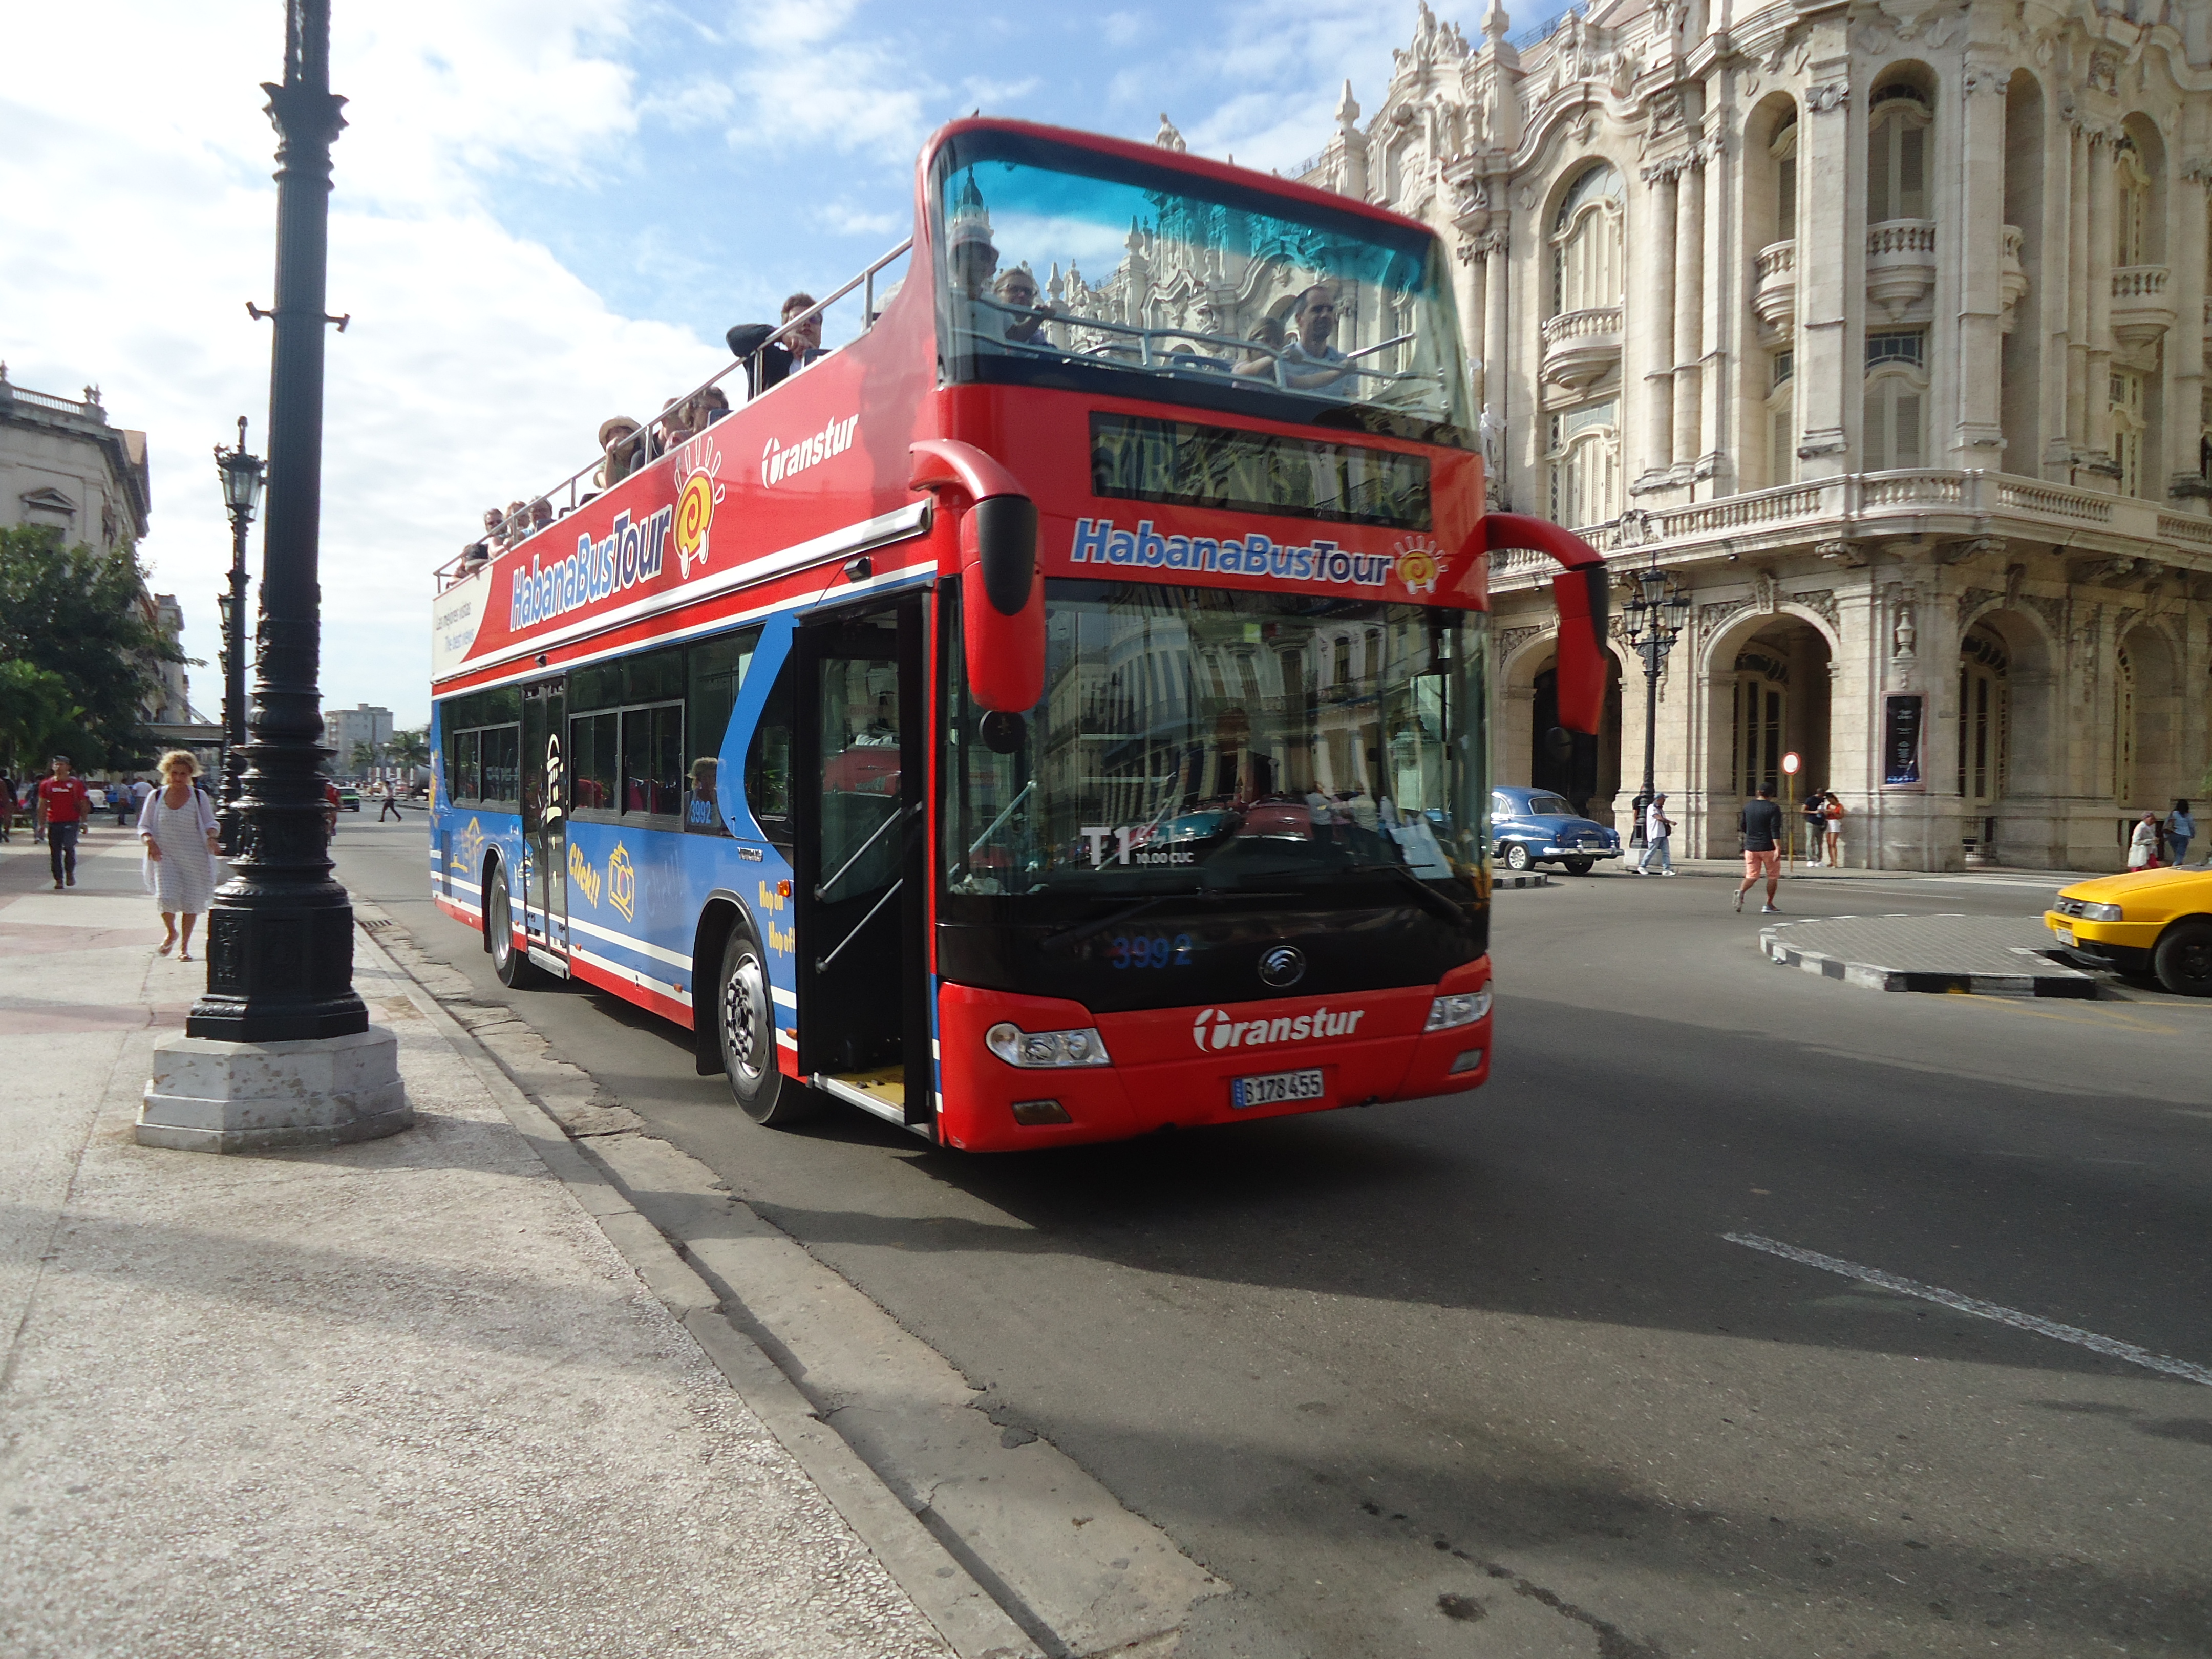 Habana bus tour à La Havane 